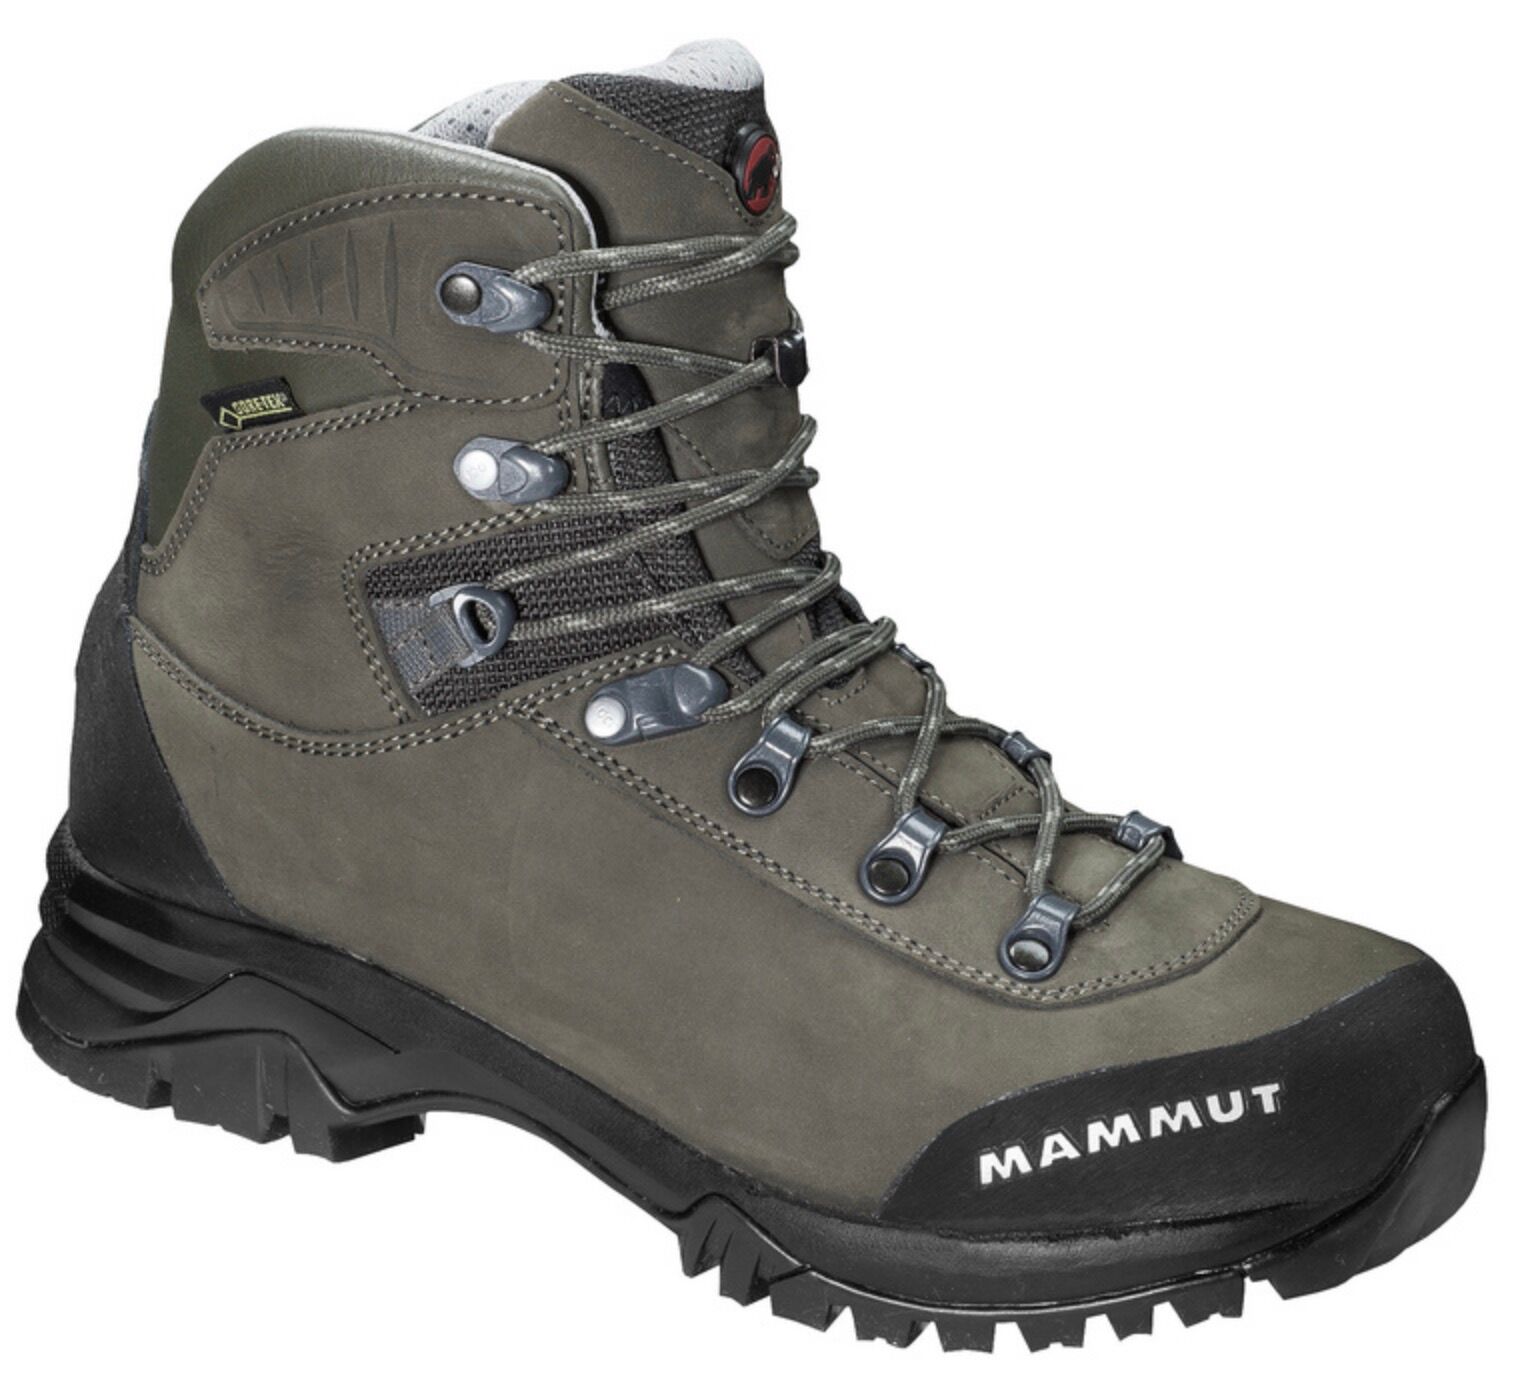 Mammut - Trovat Advanced High GTX® Women - Hiking boots - Women's